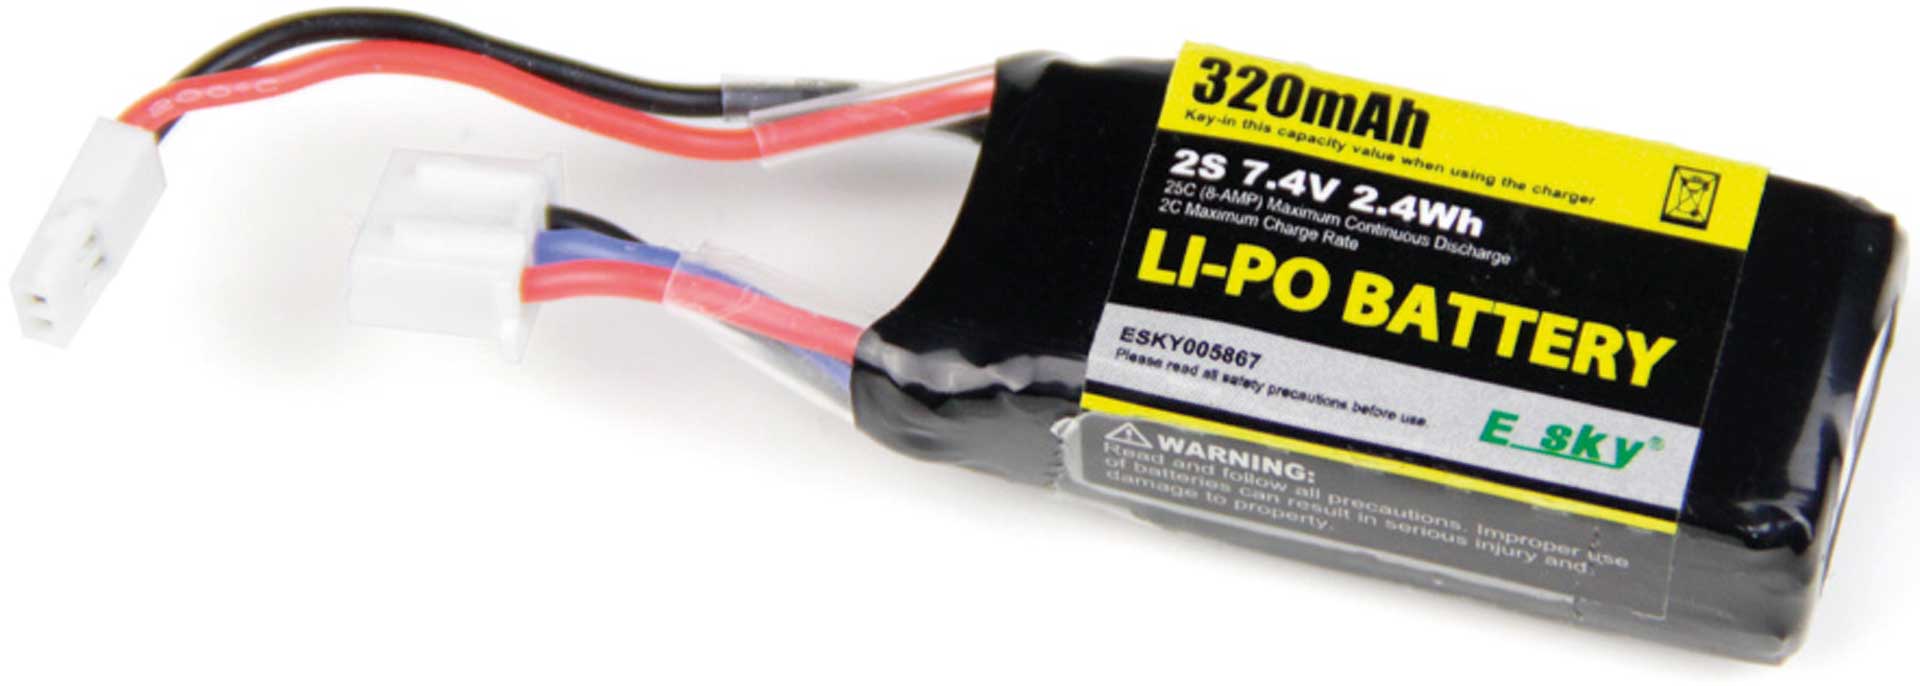 E-SKY Drive battery 2S LiPo 7,4V 320mAh 25C